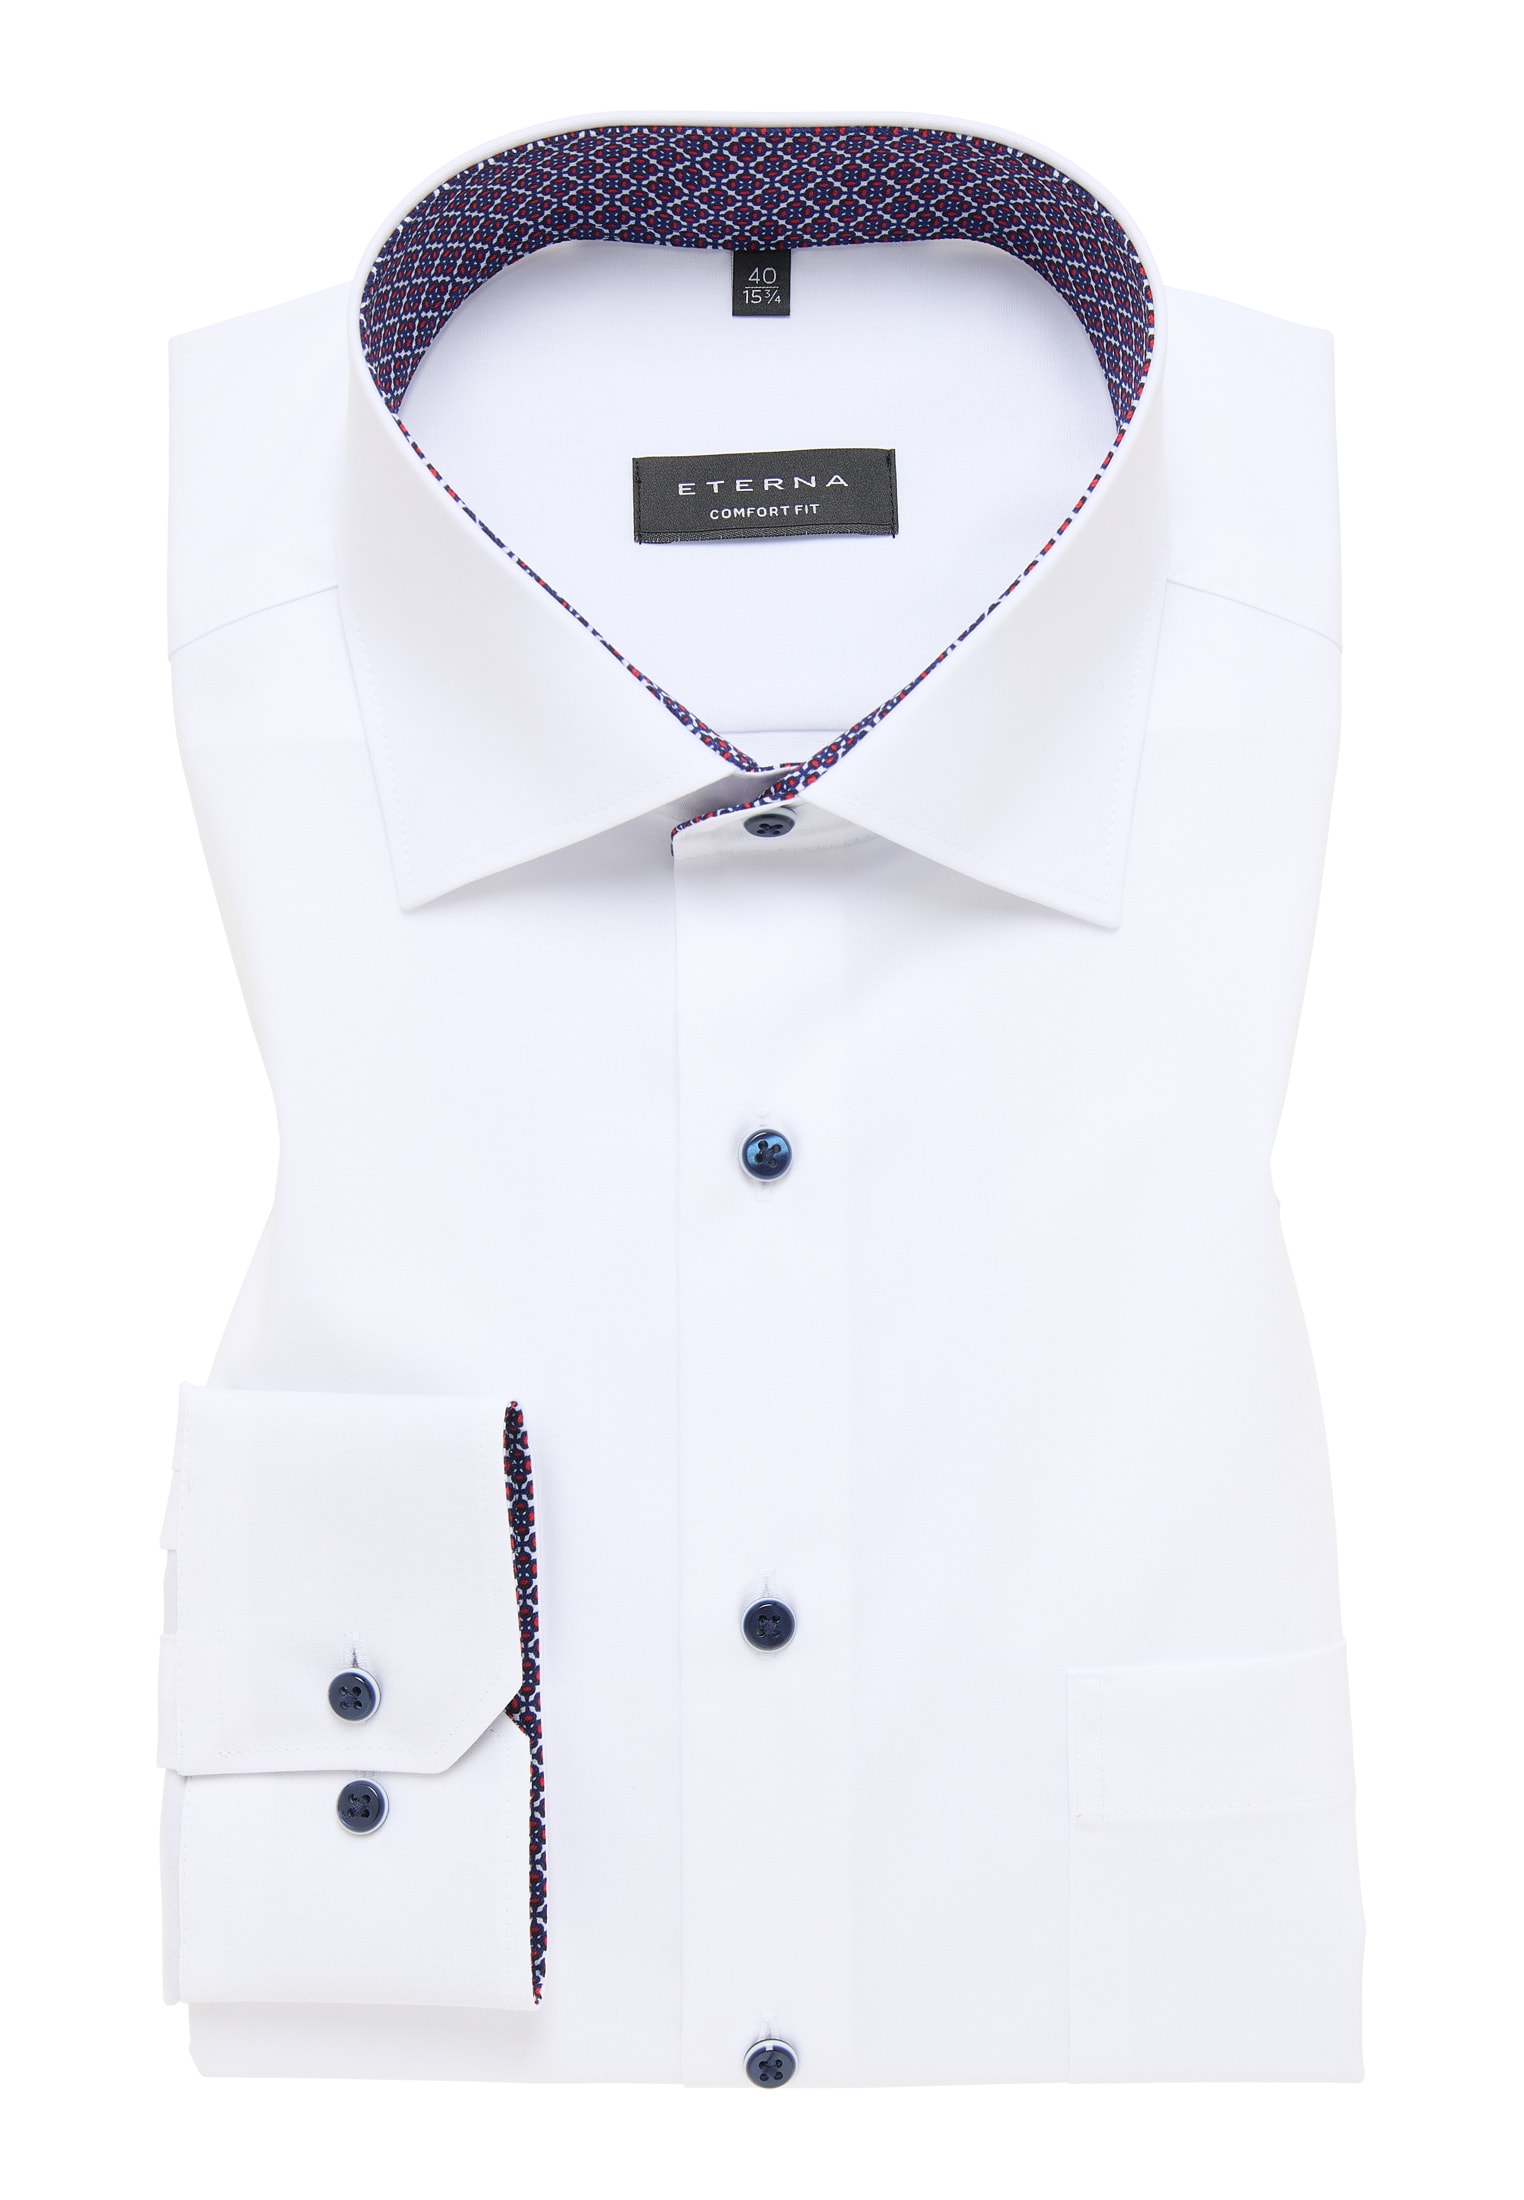 COMFORT FIT Original Shirt in weiß unifarben | weiß | verkürzter Arm (59  cm) | 47 | 1SH11720-00-01-47-59